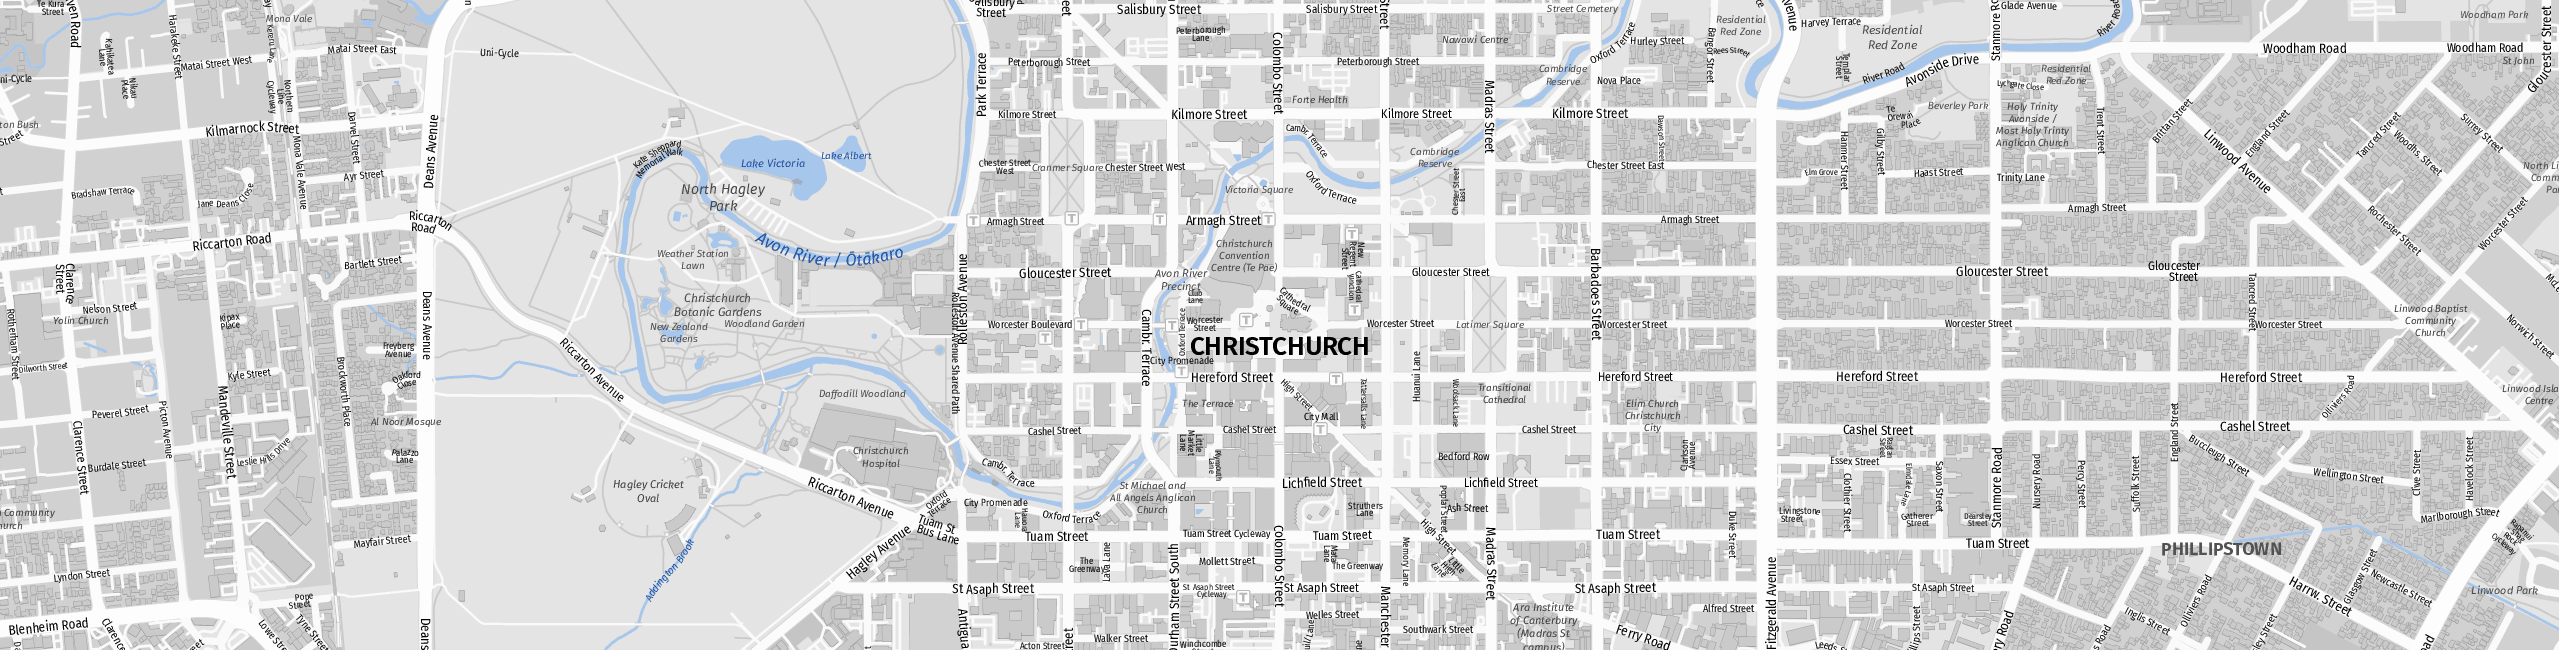 Stadtplan Christchurch zum Downloaden.